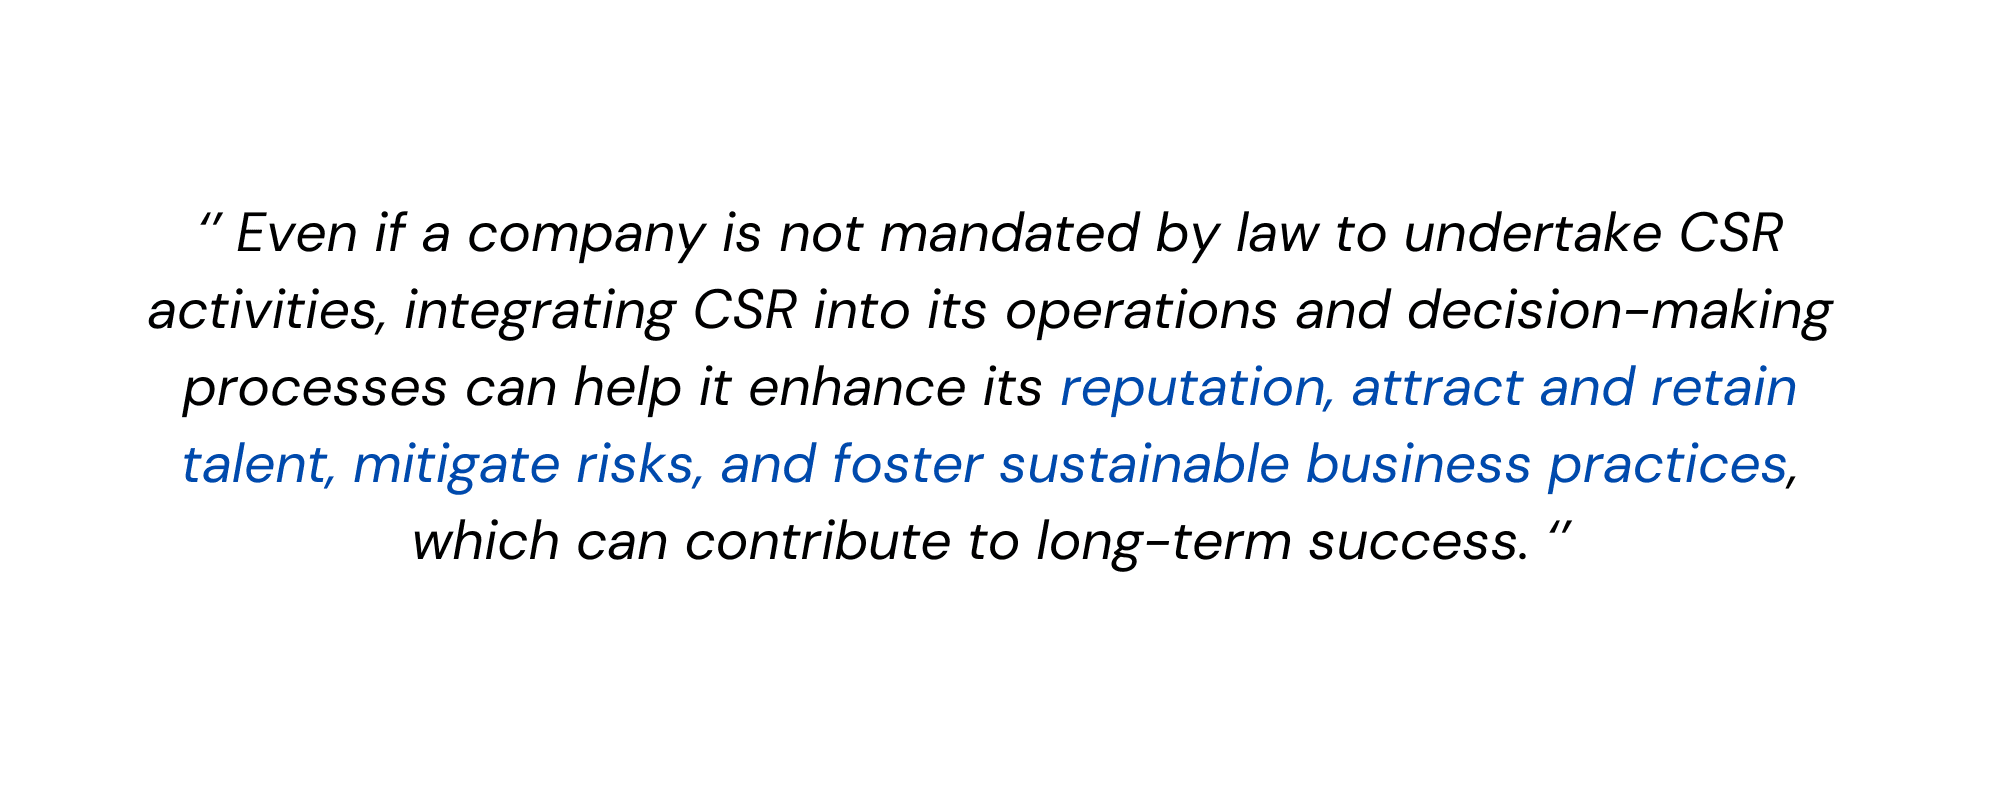 CSR image 